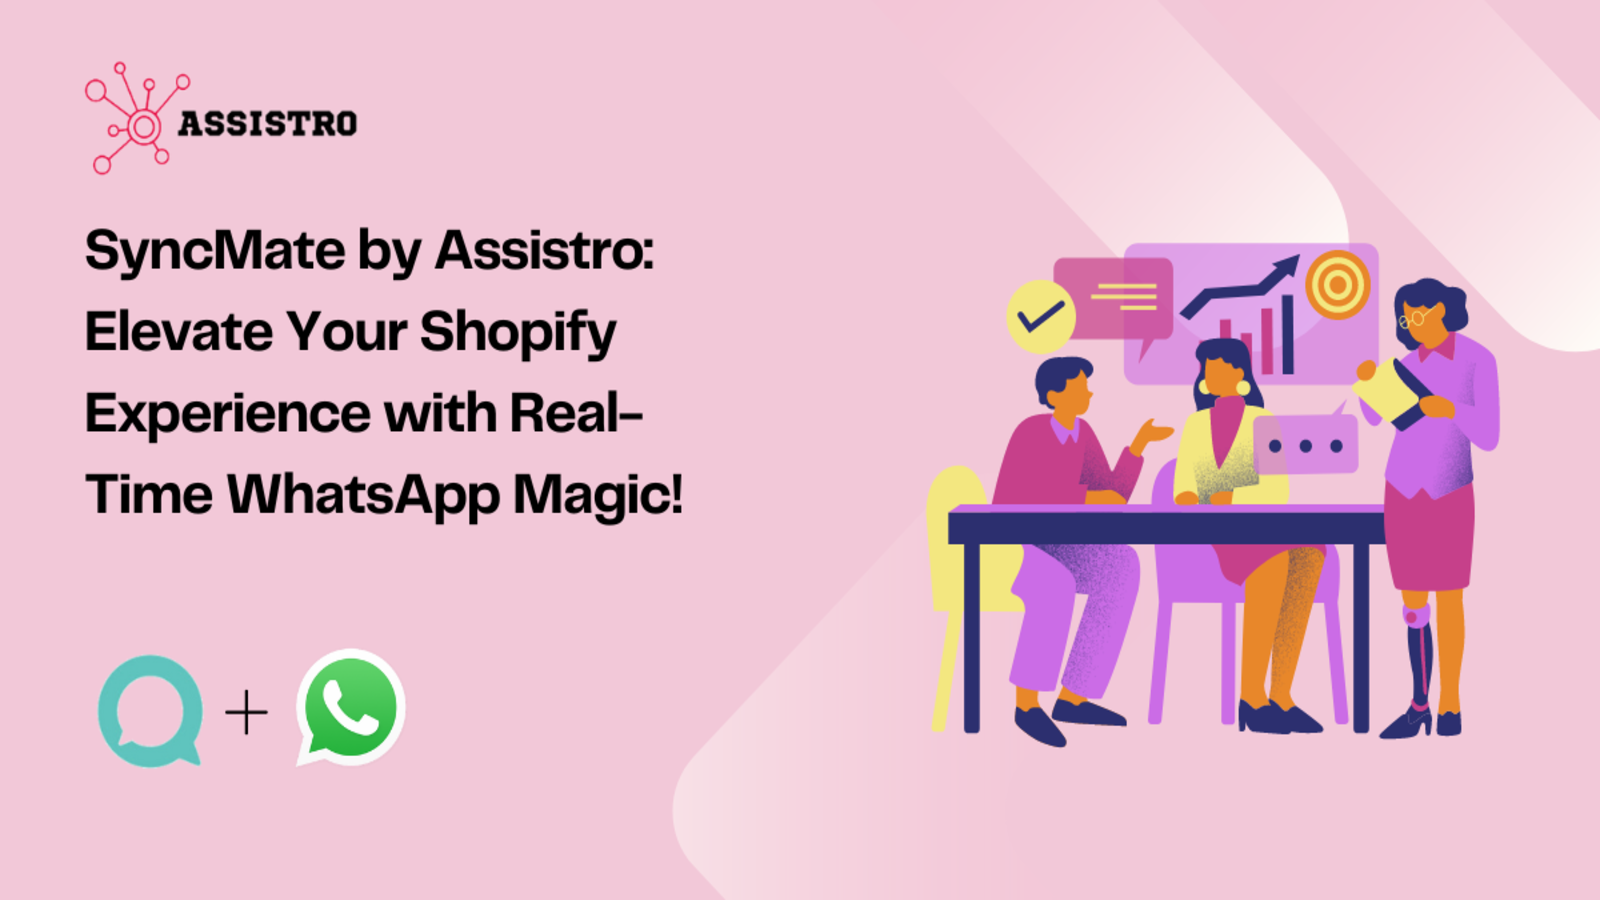 SyncMate by Assistro: Höj Kundens Shopify-upplevelse